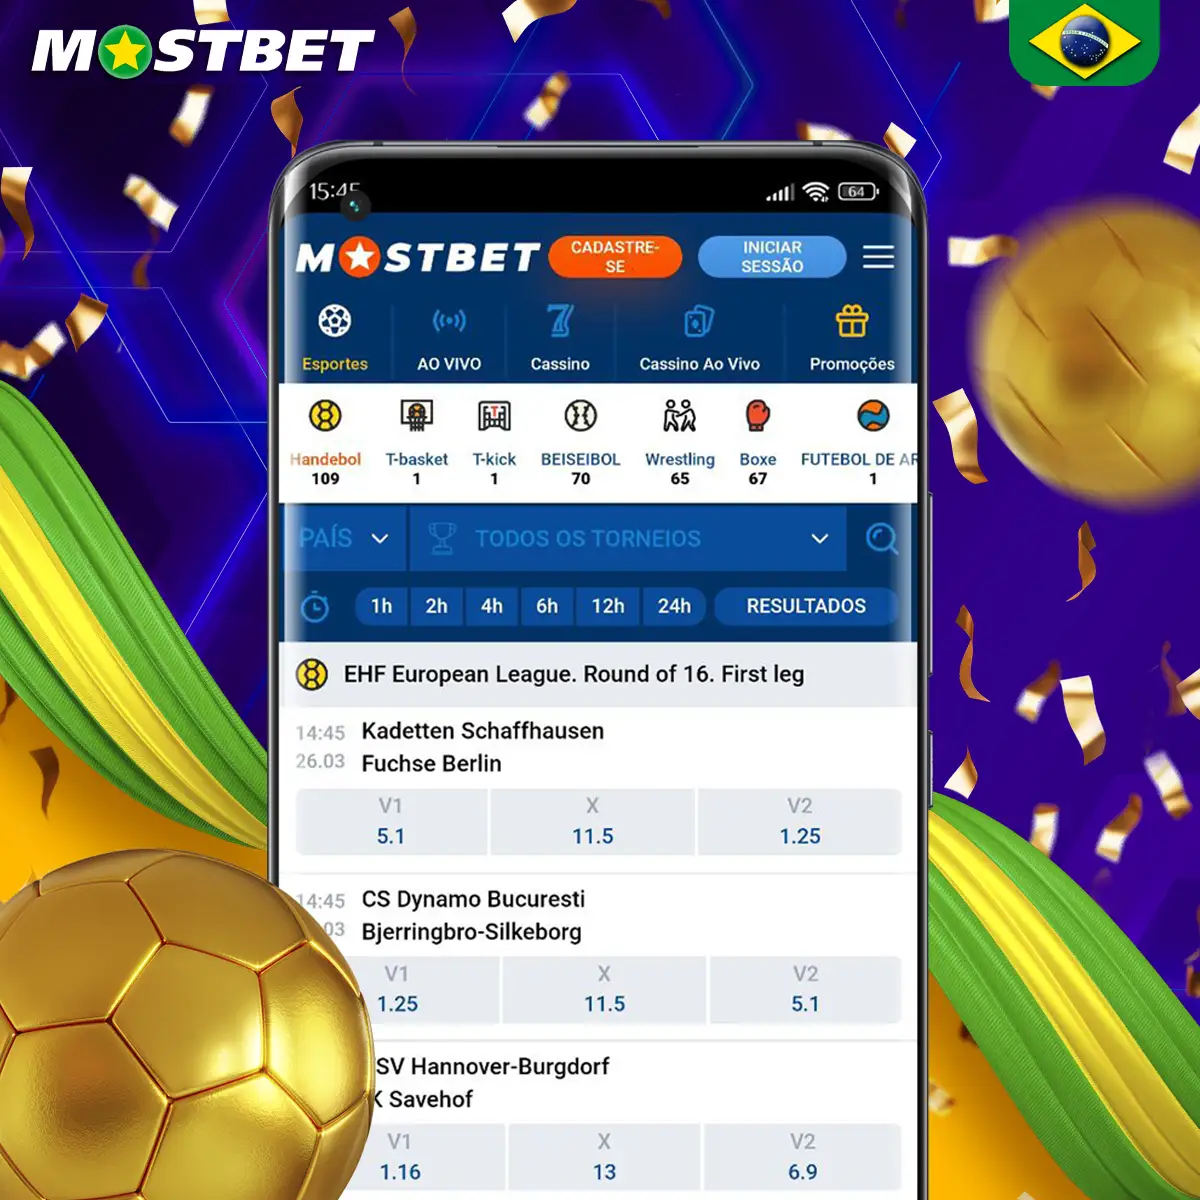 Opções de apostas em handebol eletrônicos na plataforma Mostbet.